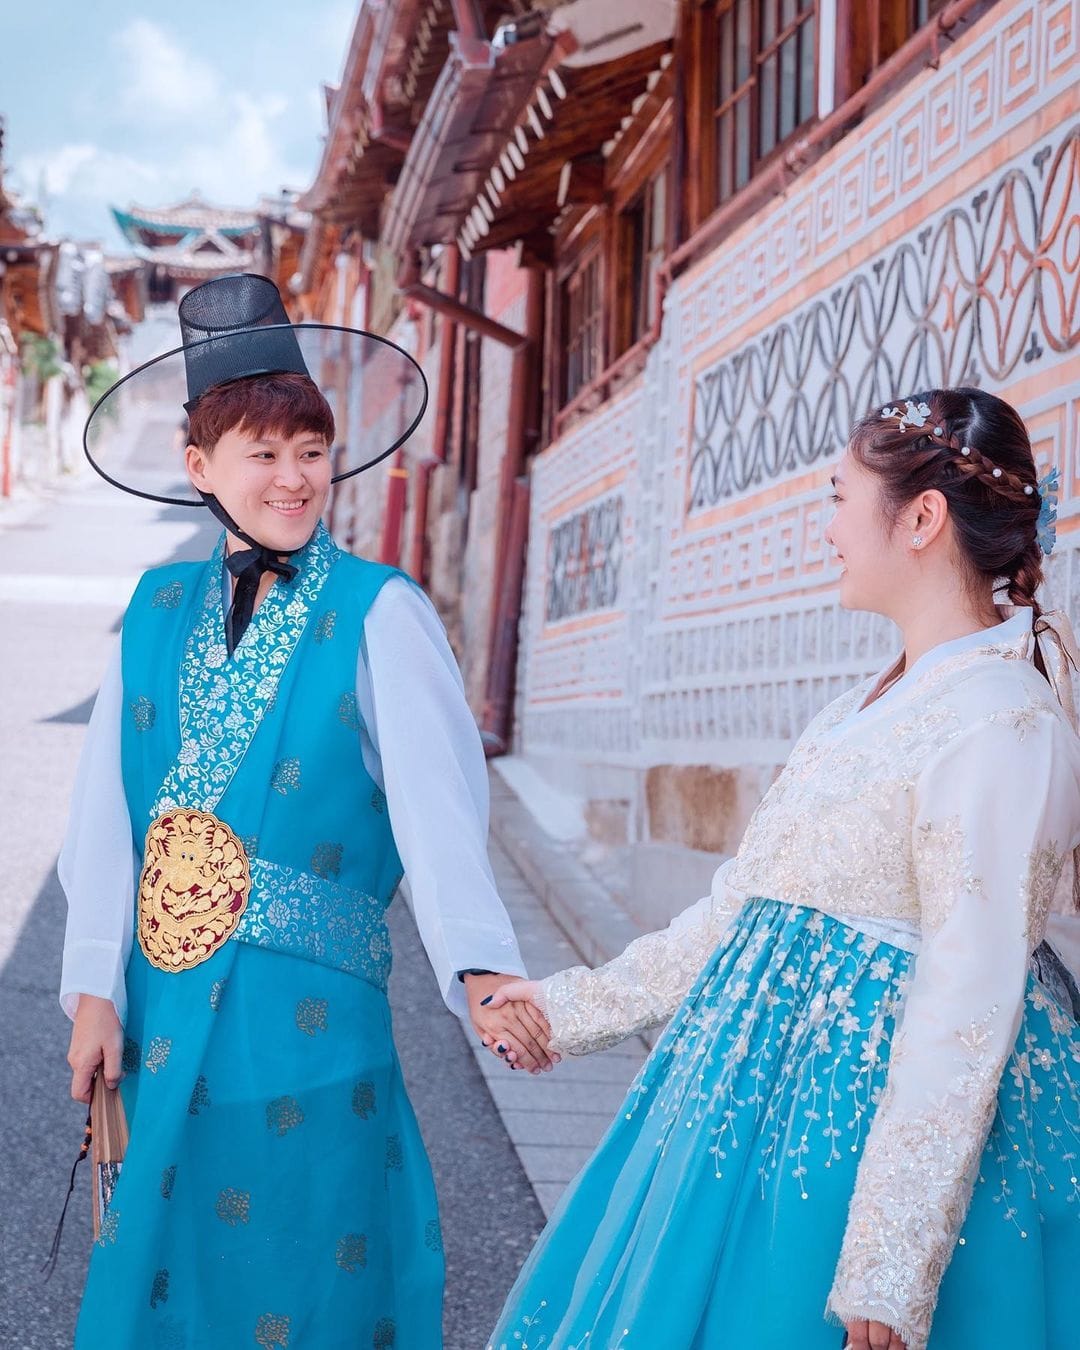 Mặc lùm xùm với gia đình, Thiện Nhân đăng ảnh ngọt 'như phim Hàn' bên người yêu đồng giới tại xứ sở kim chi - Ảnh 2